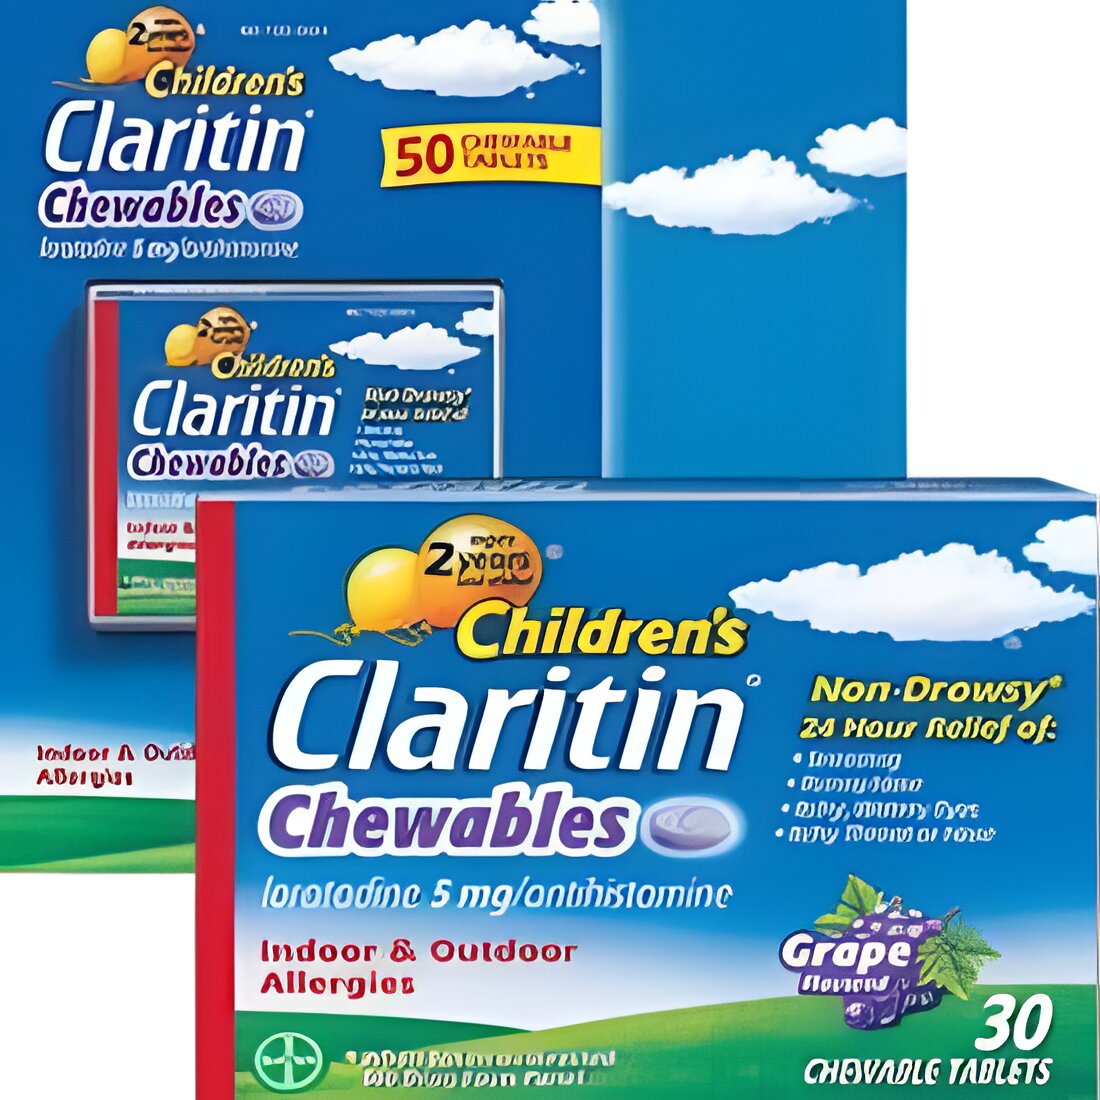 Free Claritin Children's Chewables